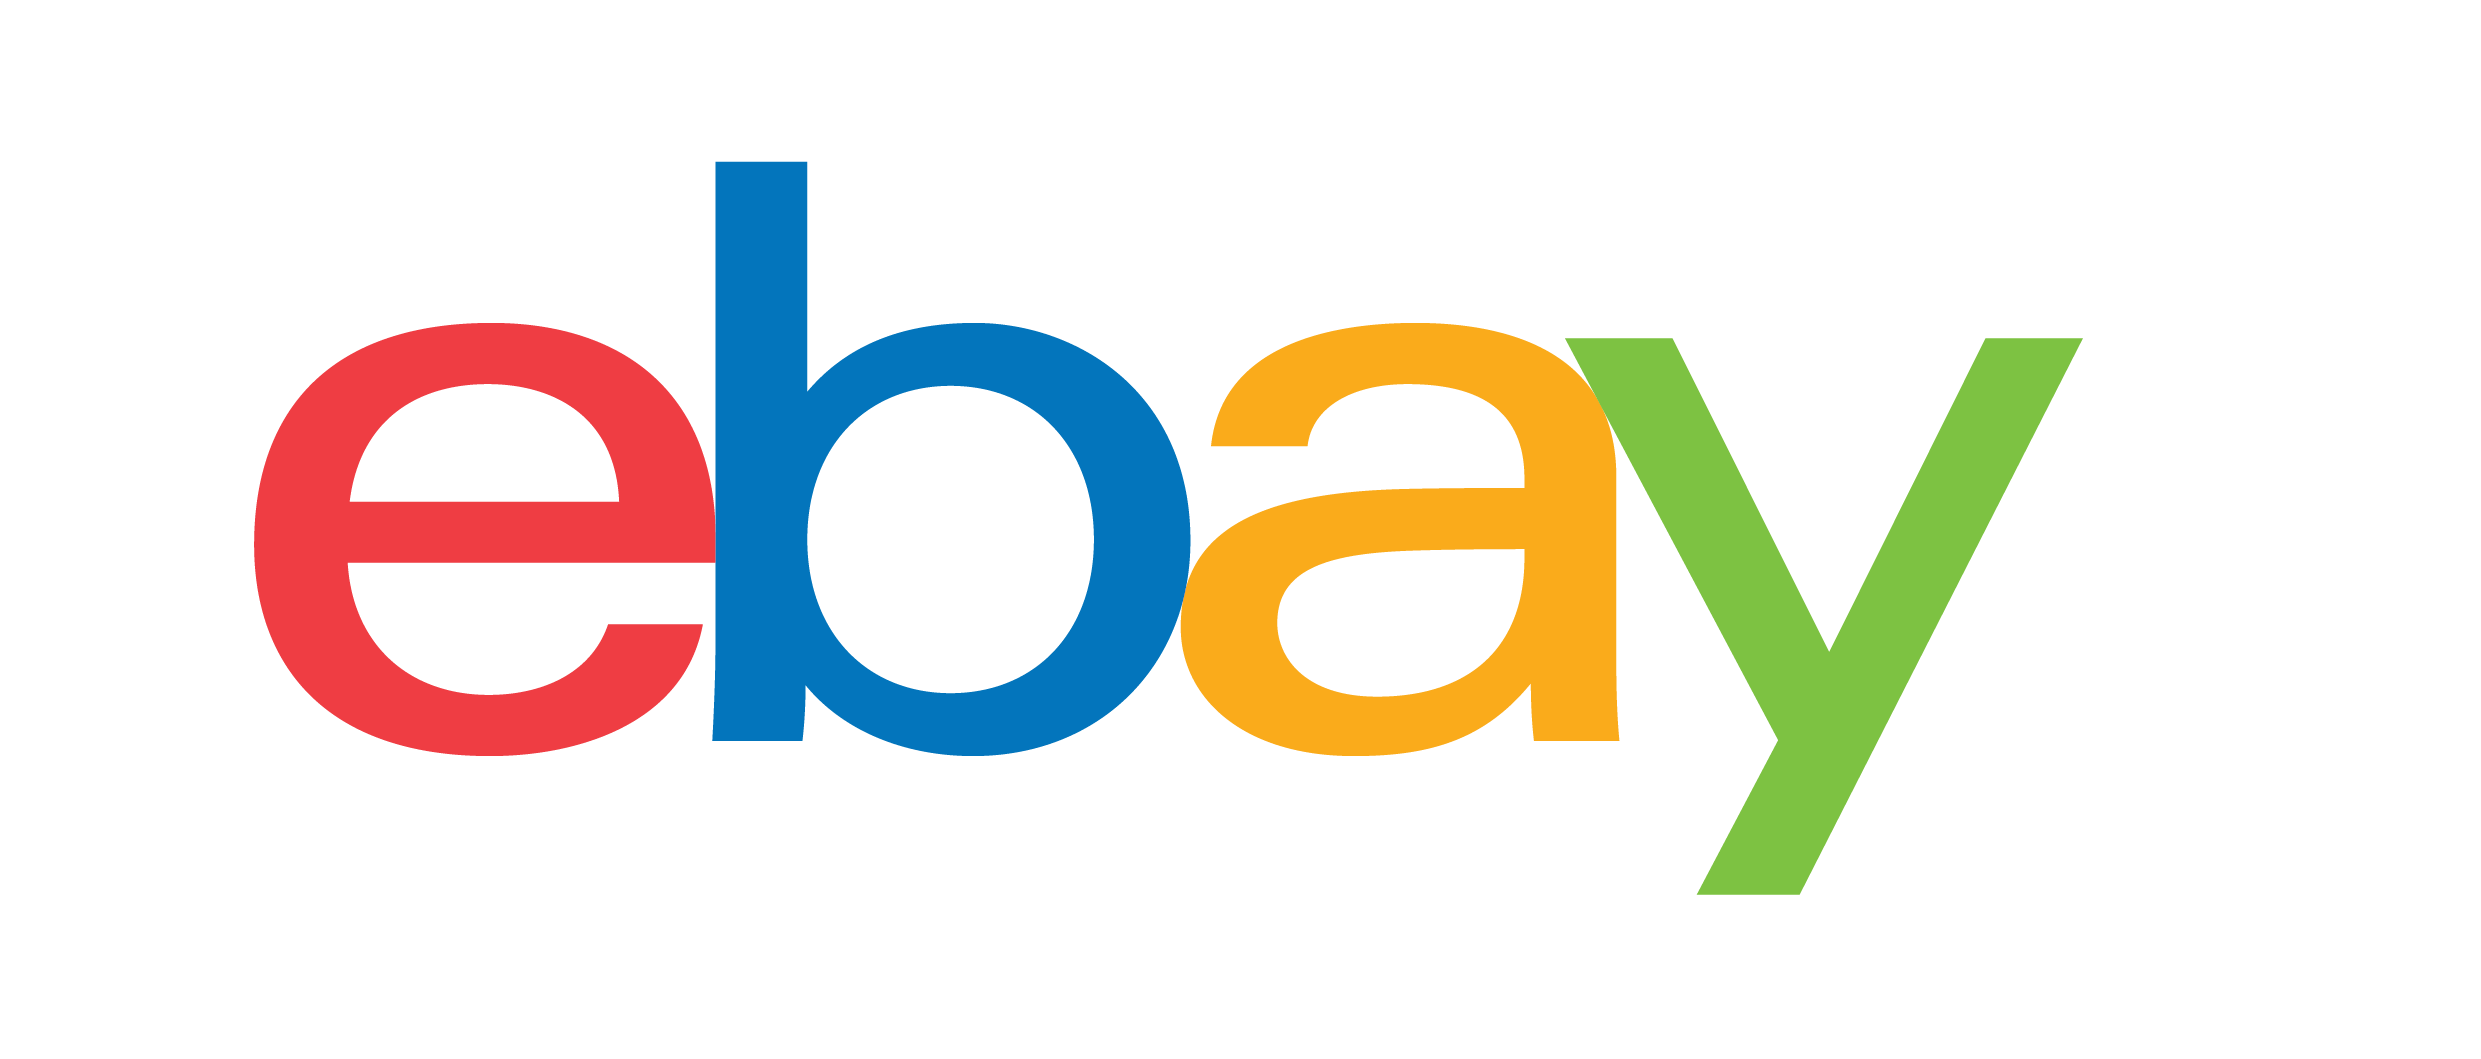 eBay 標誌